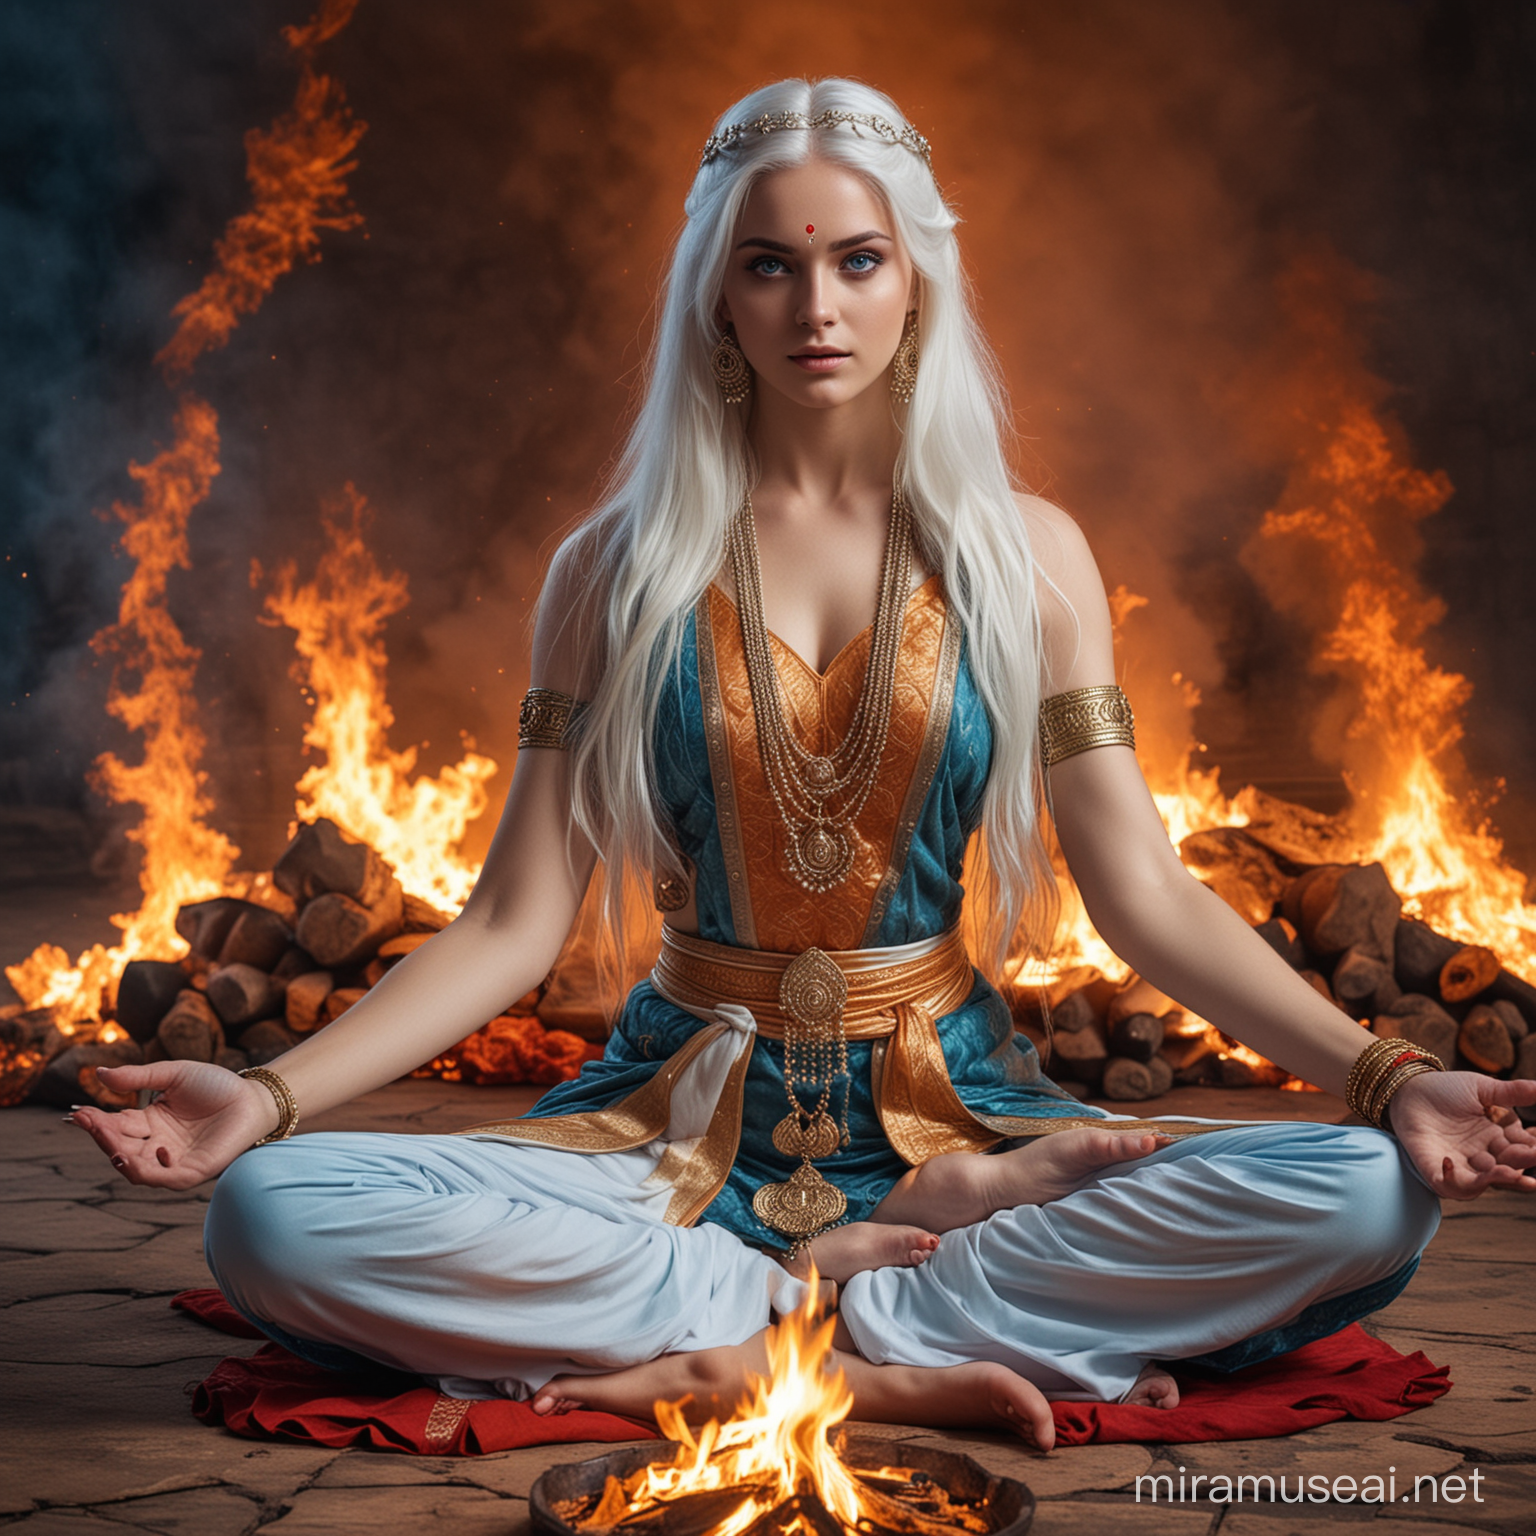 Diosa emperatriz hermosa joven de cabellos blancos largos y ojos azules vestida como Diosa emperatriz hindu en combate sentada en posición flor de loto rodeada de fuego 